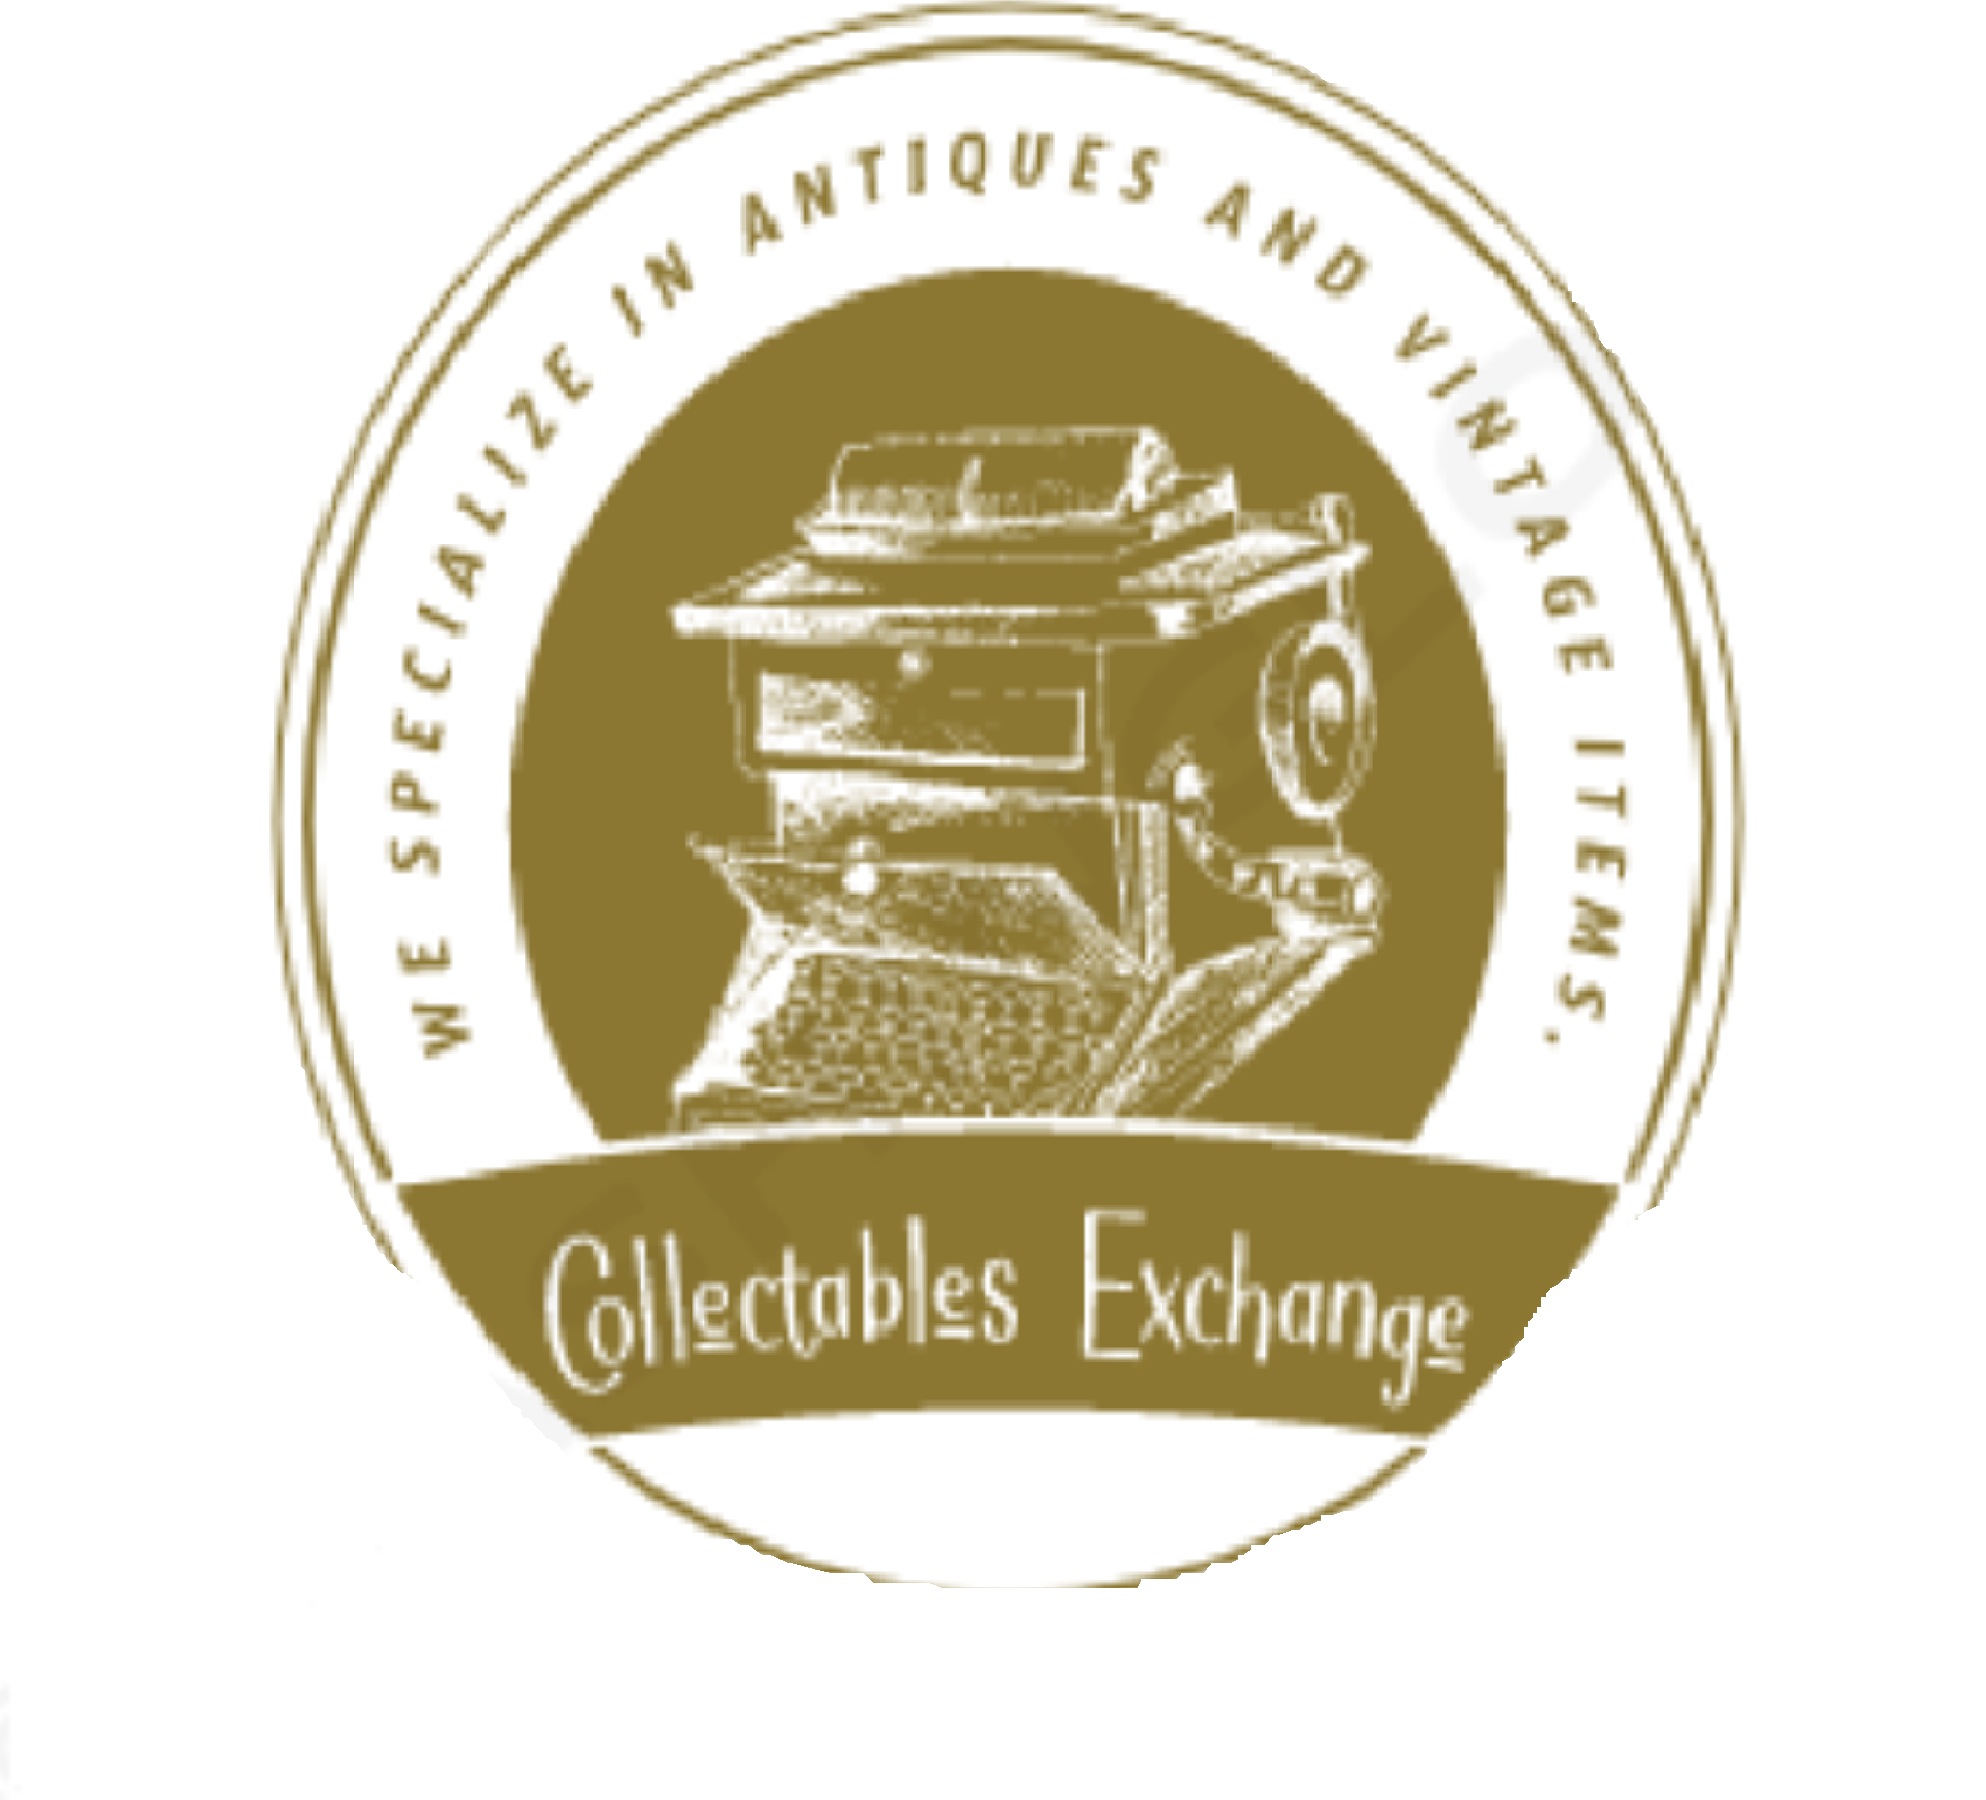 Collectibles Exchange Enterprise | AuctionNinja